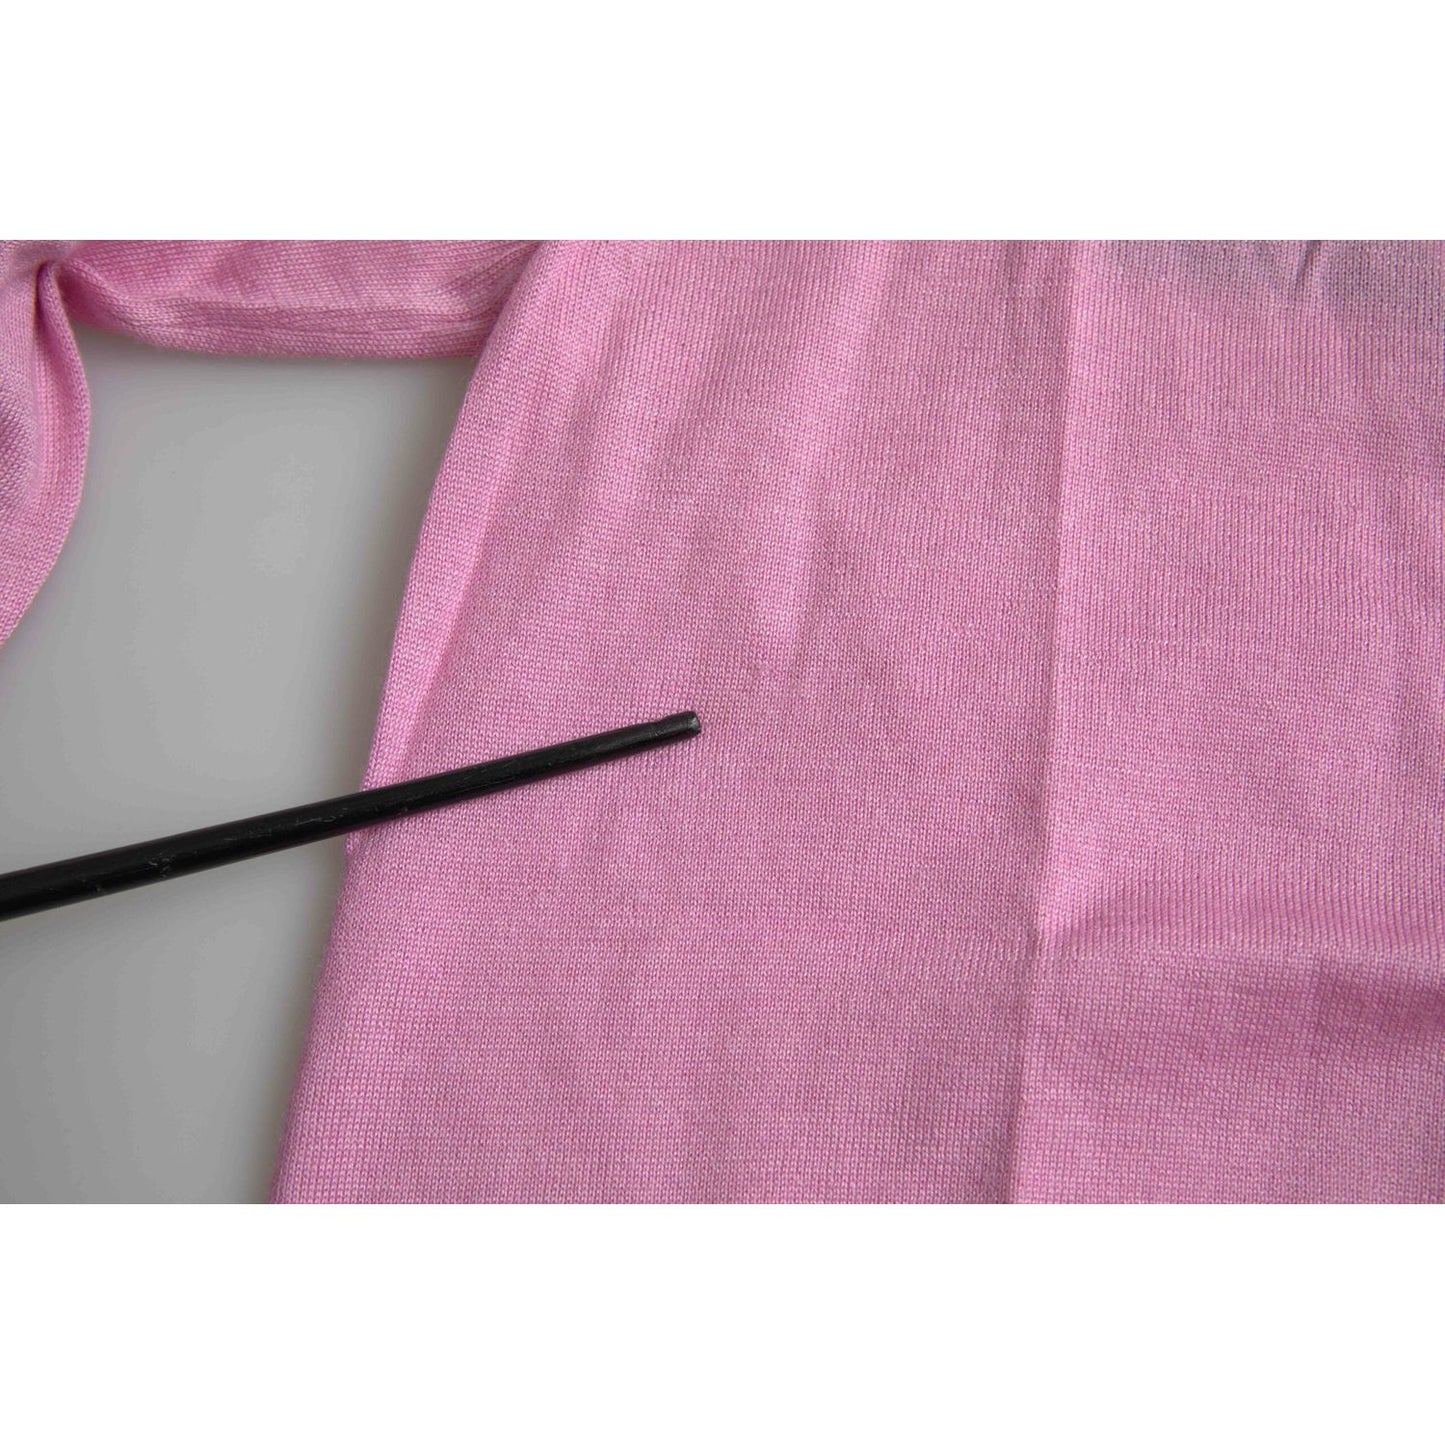 Dolce & Gabbana Elegant Cashmere Silk Pink Cardigan elegant-cashmere-silk-pink-cardigan